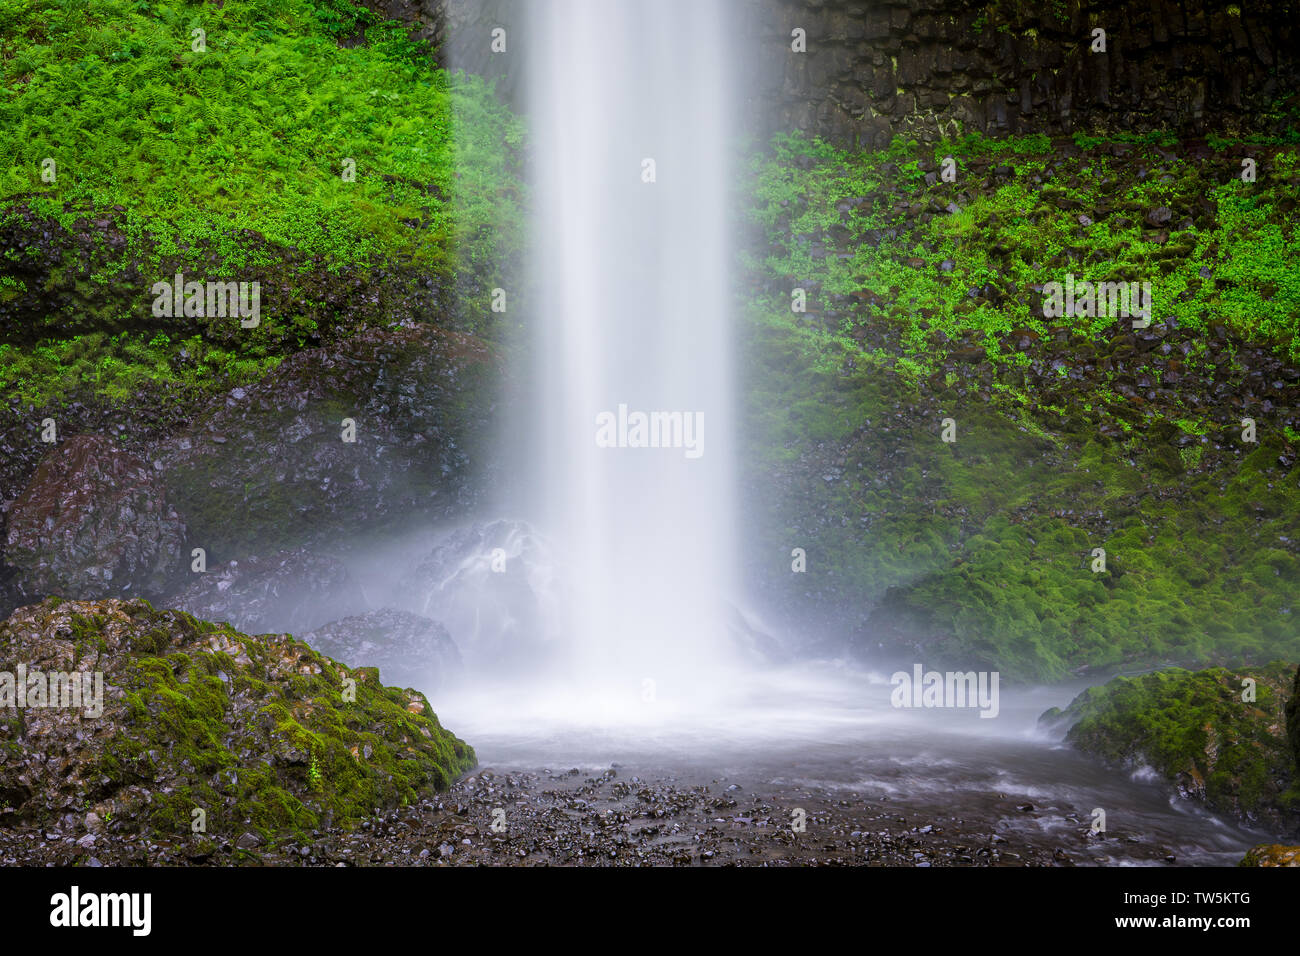 Einen schönen Wasserfall Spritzen in einen Pool unter Felsen in üppigen grünen Moos und Vegetation - Latourell fällt in Oregon Columbia River Gorge Stockfoto